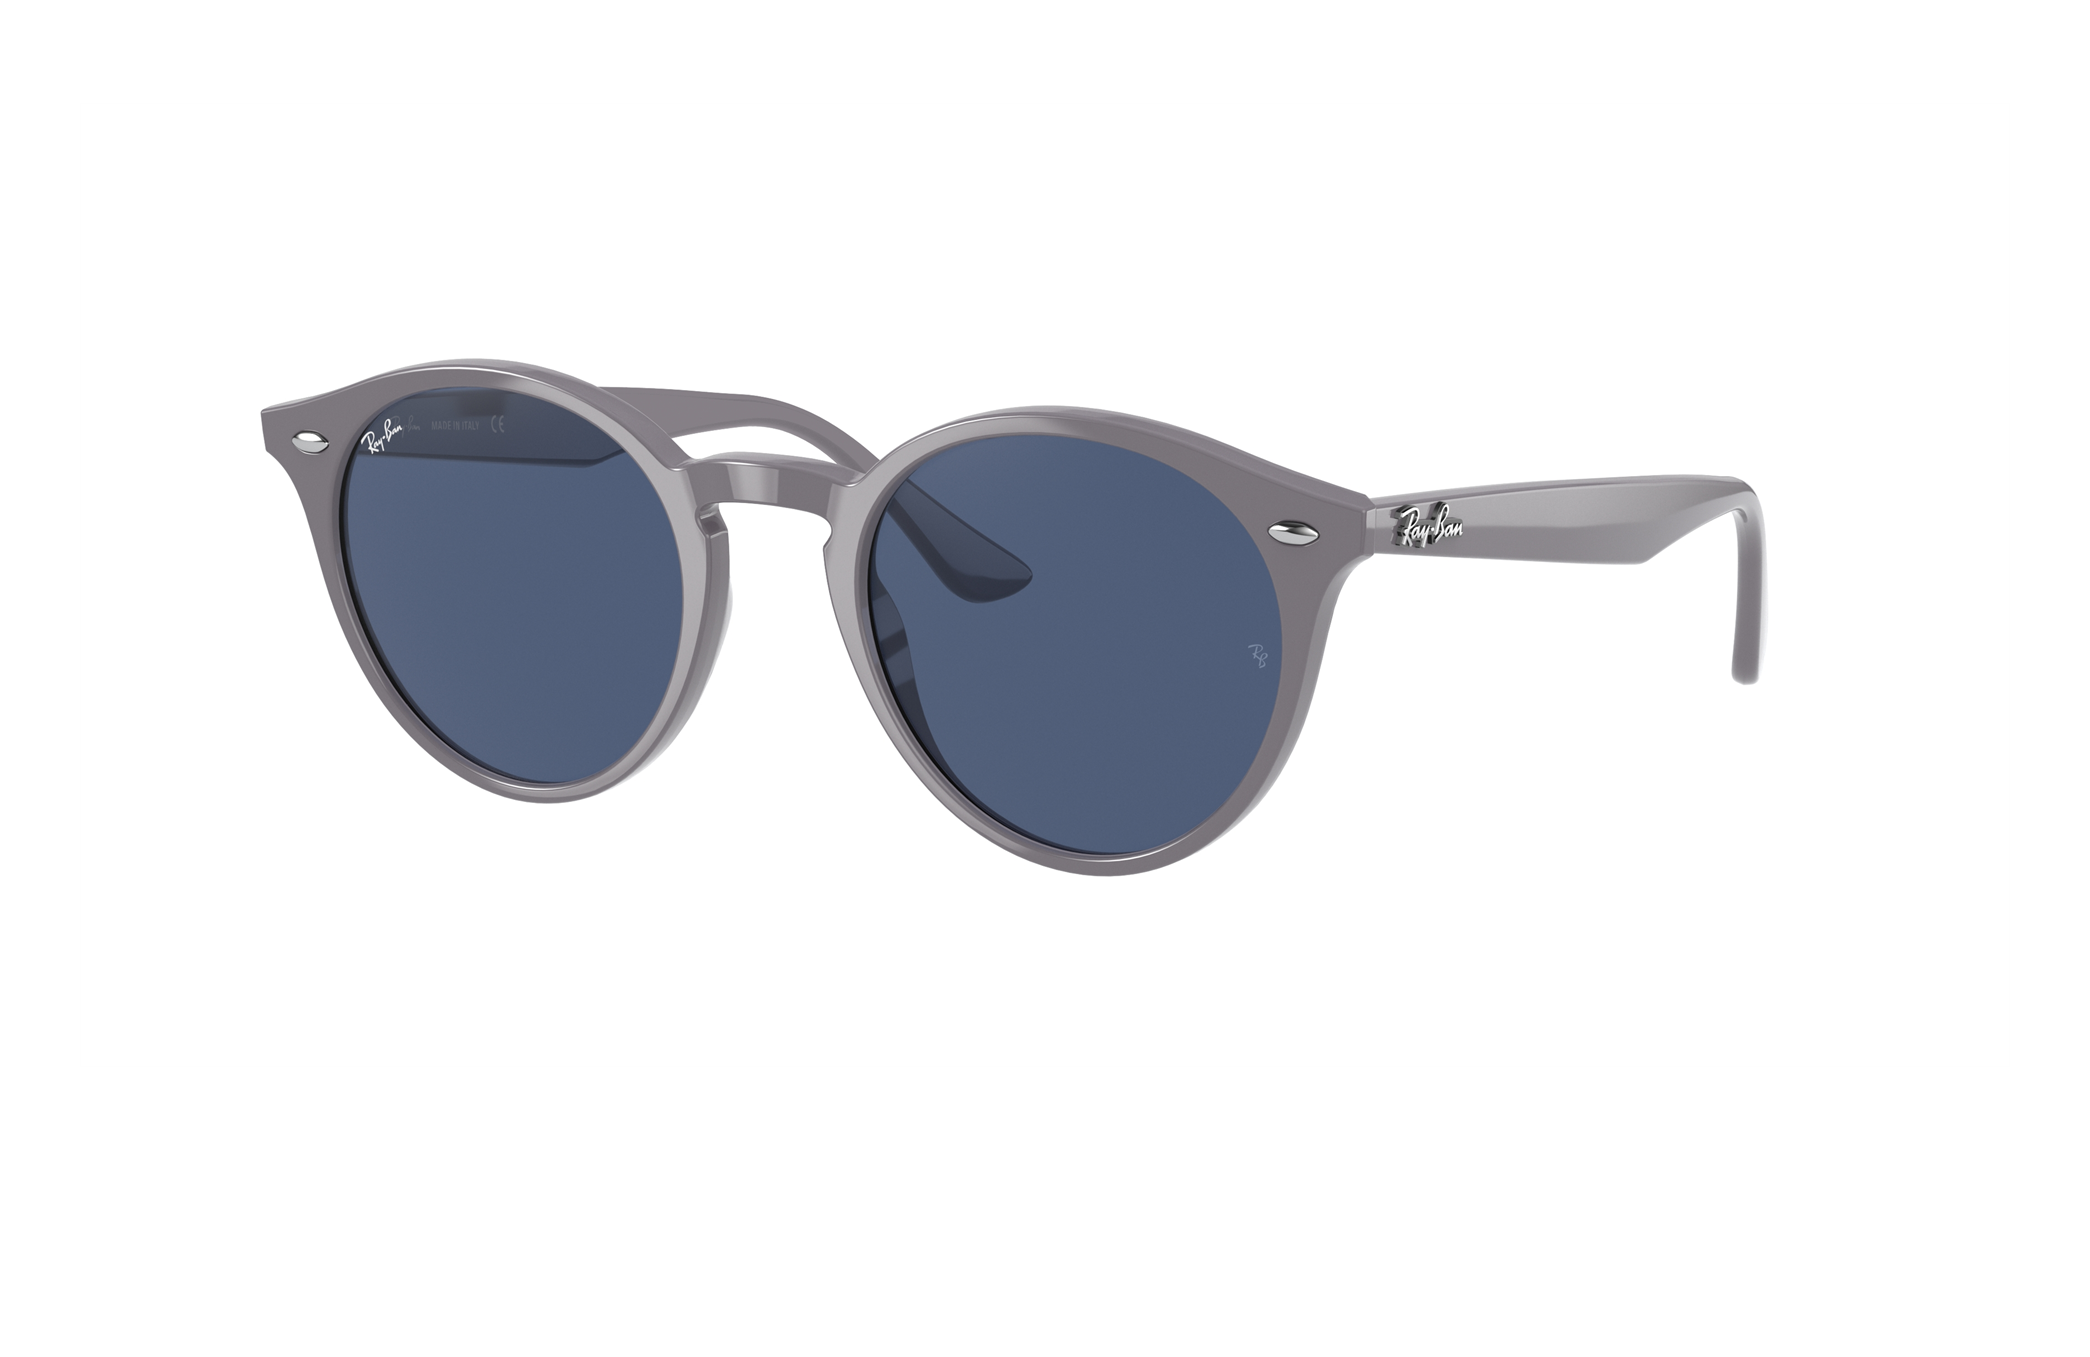 Sunglasses | Round Tortoise Brown B-15 2180 Sunglasses | Ray-Ban